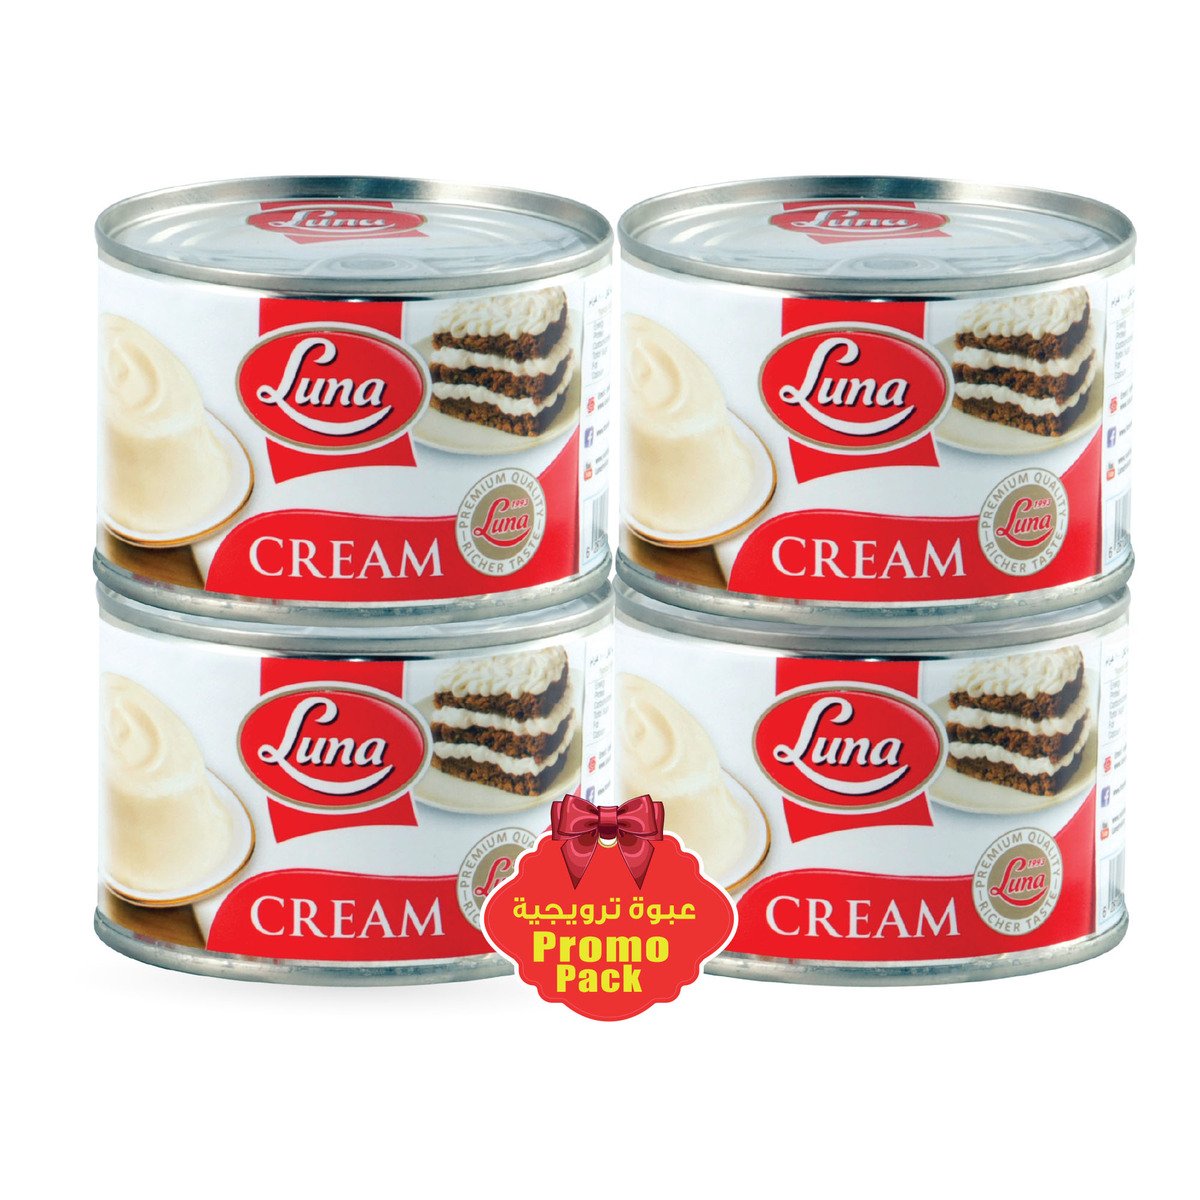 Luna Cream 155g 3+1